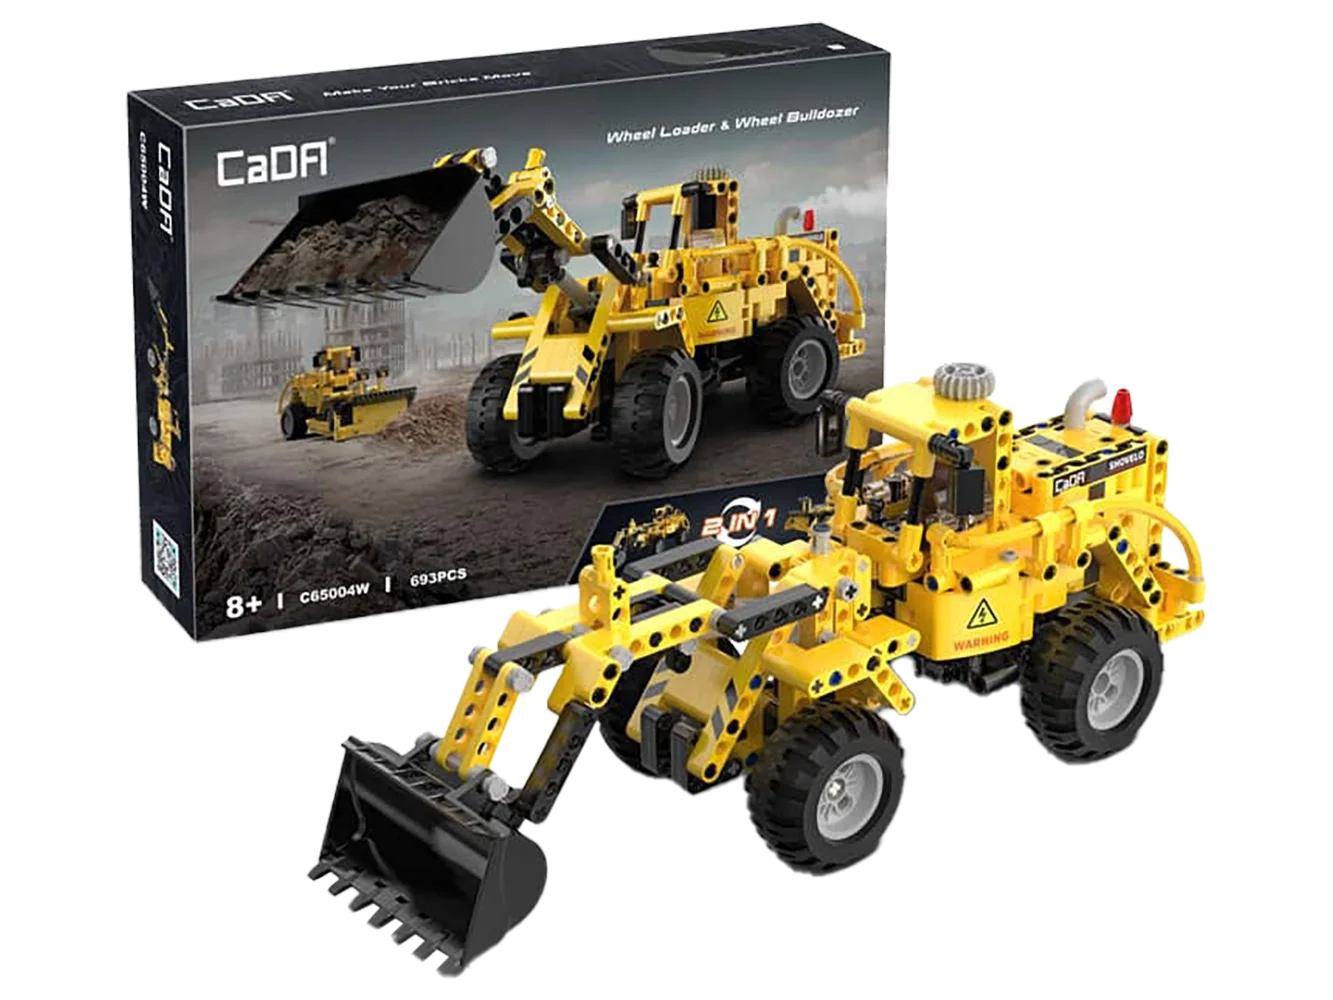 cada-c65004w-wheel-loader-and-wheel-bulldozer-seitenansicht-mit-box